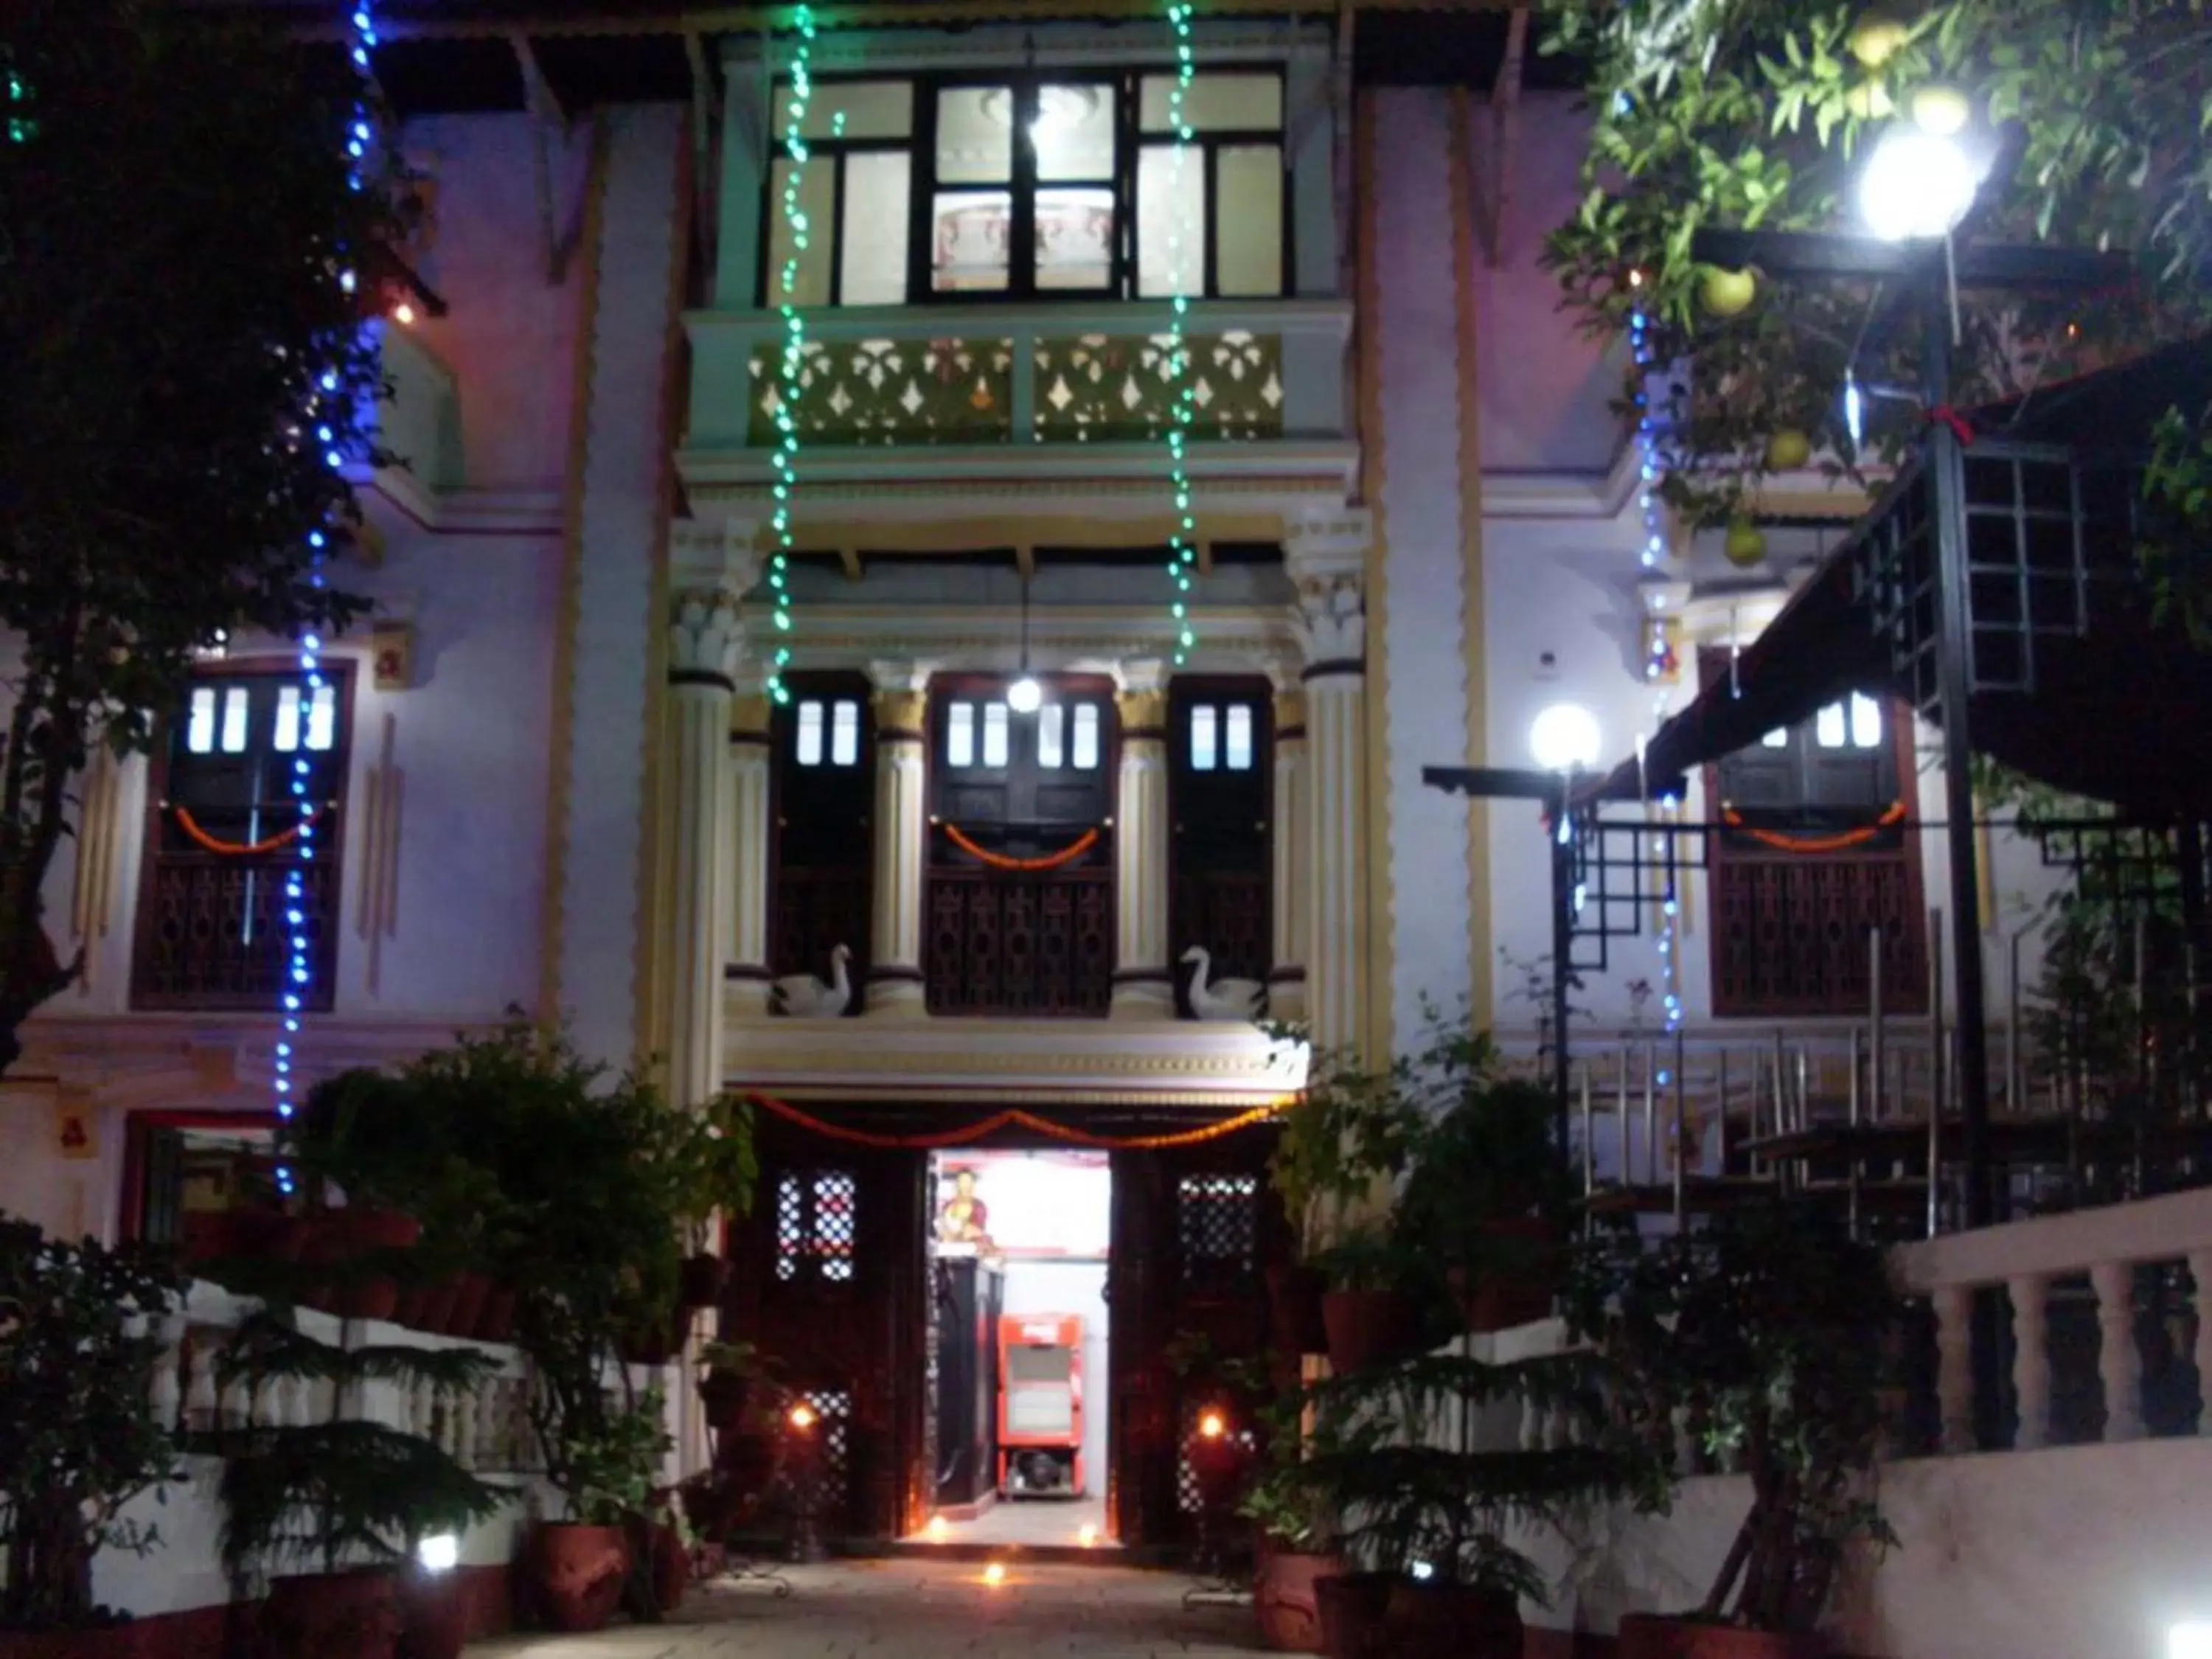 Facade/entrance in Kathmandu Boutique Hotel